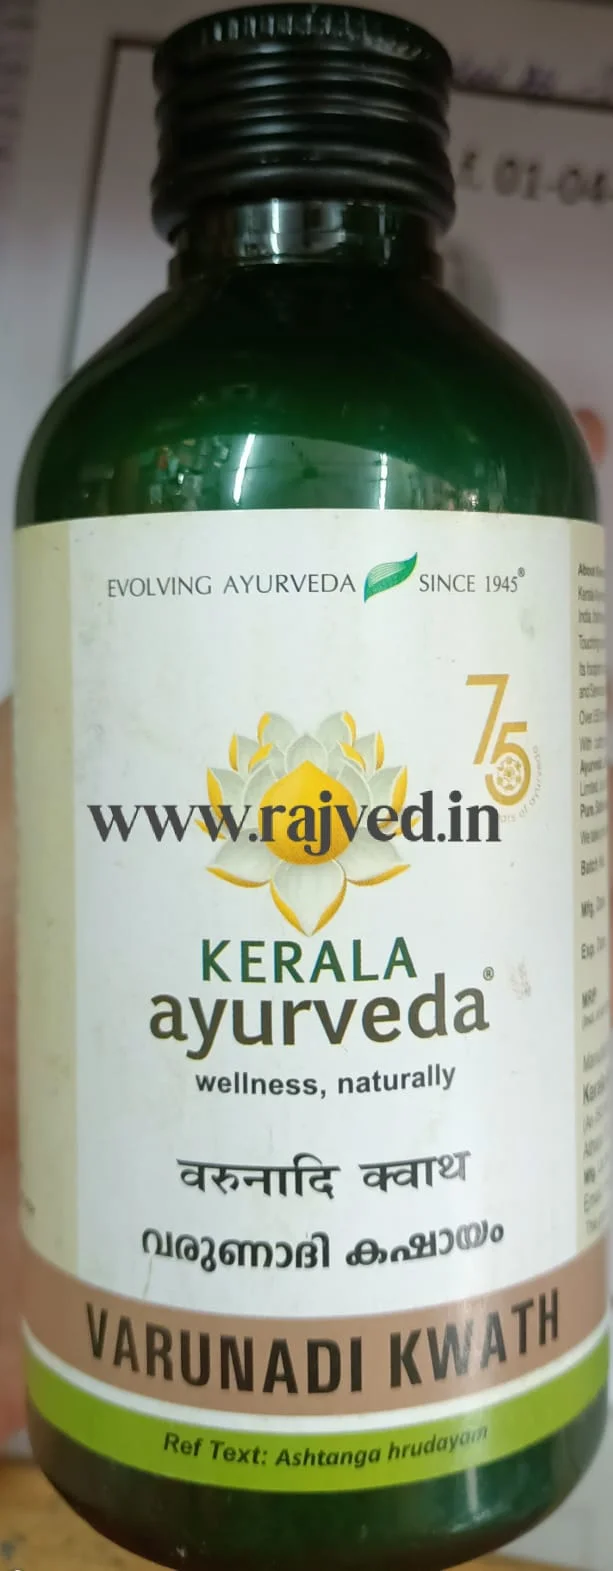 varunadi kwath 200 ml Kerala Ayurveda Ltd